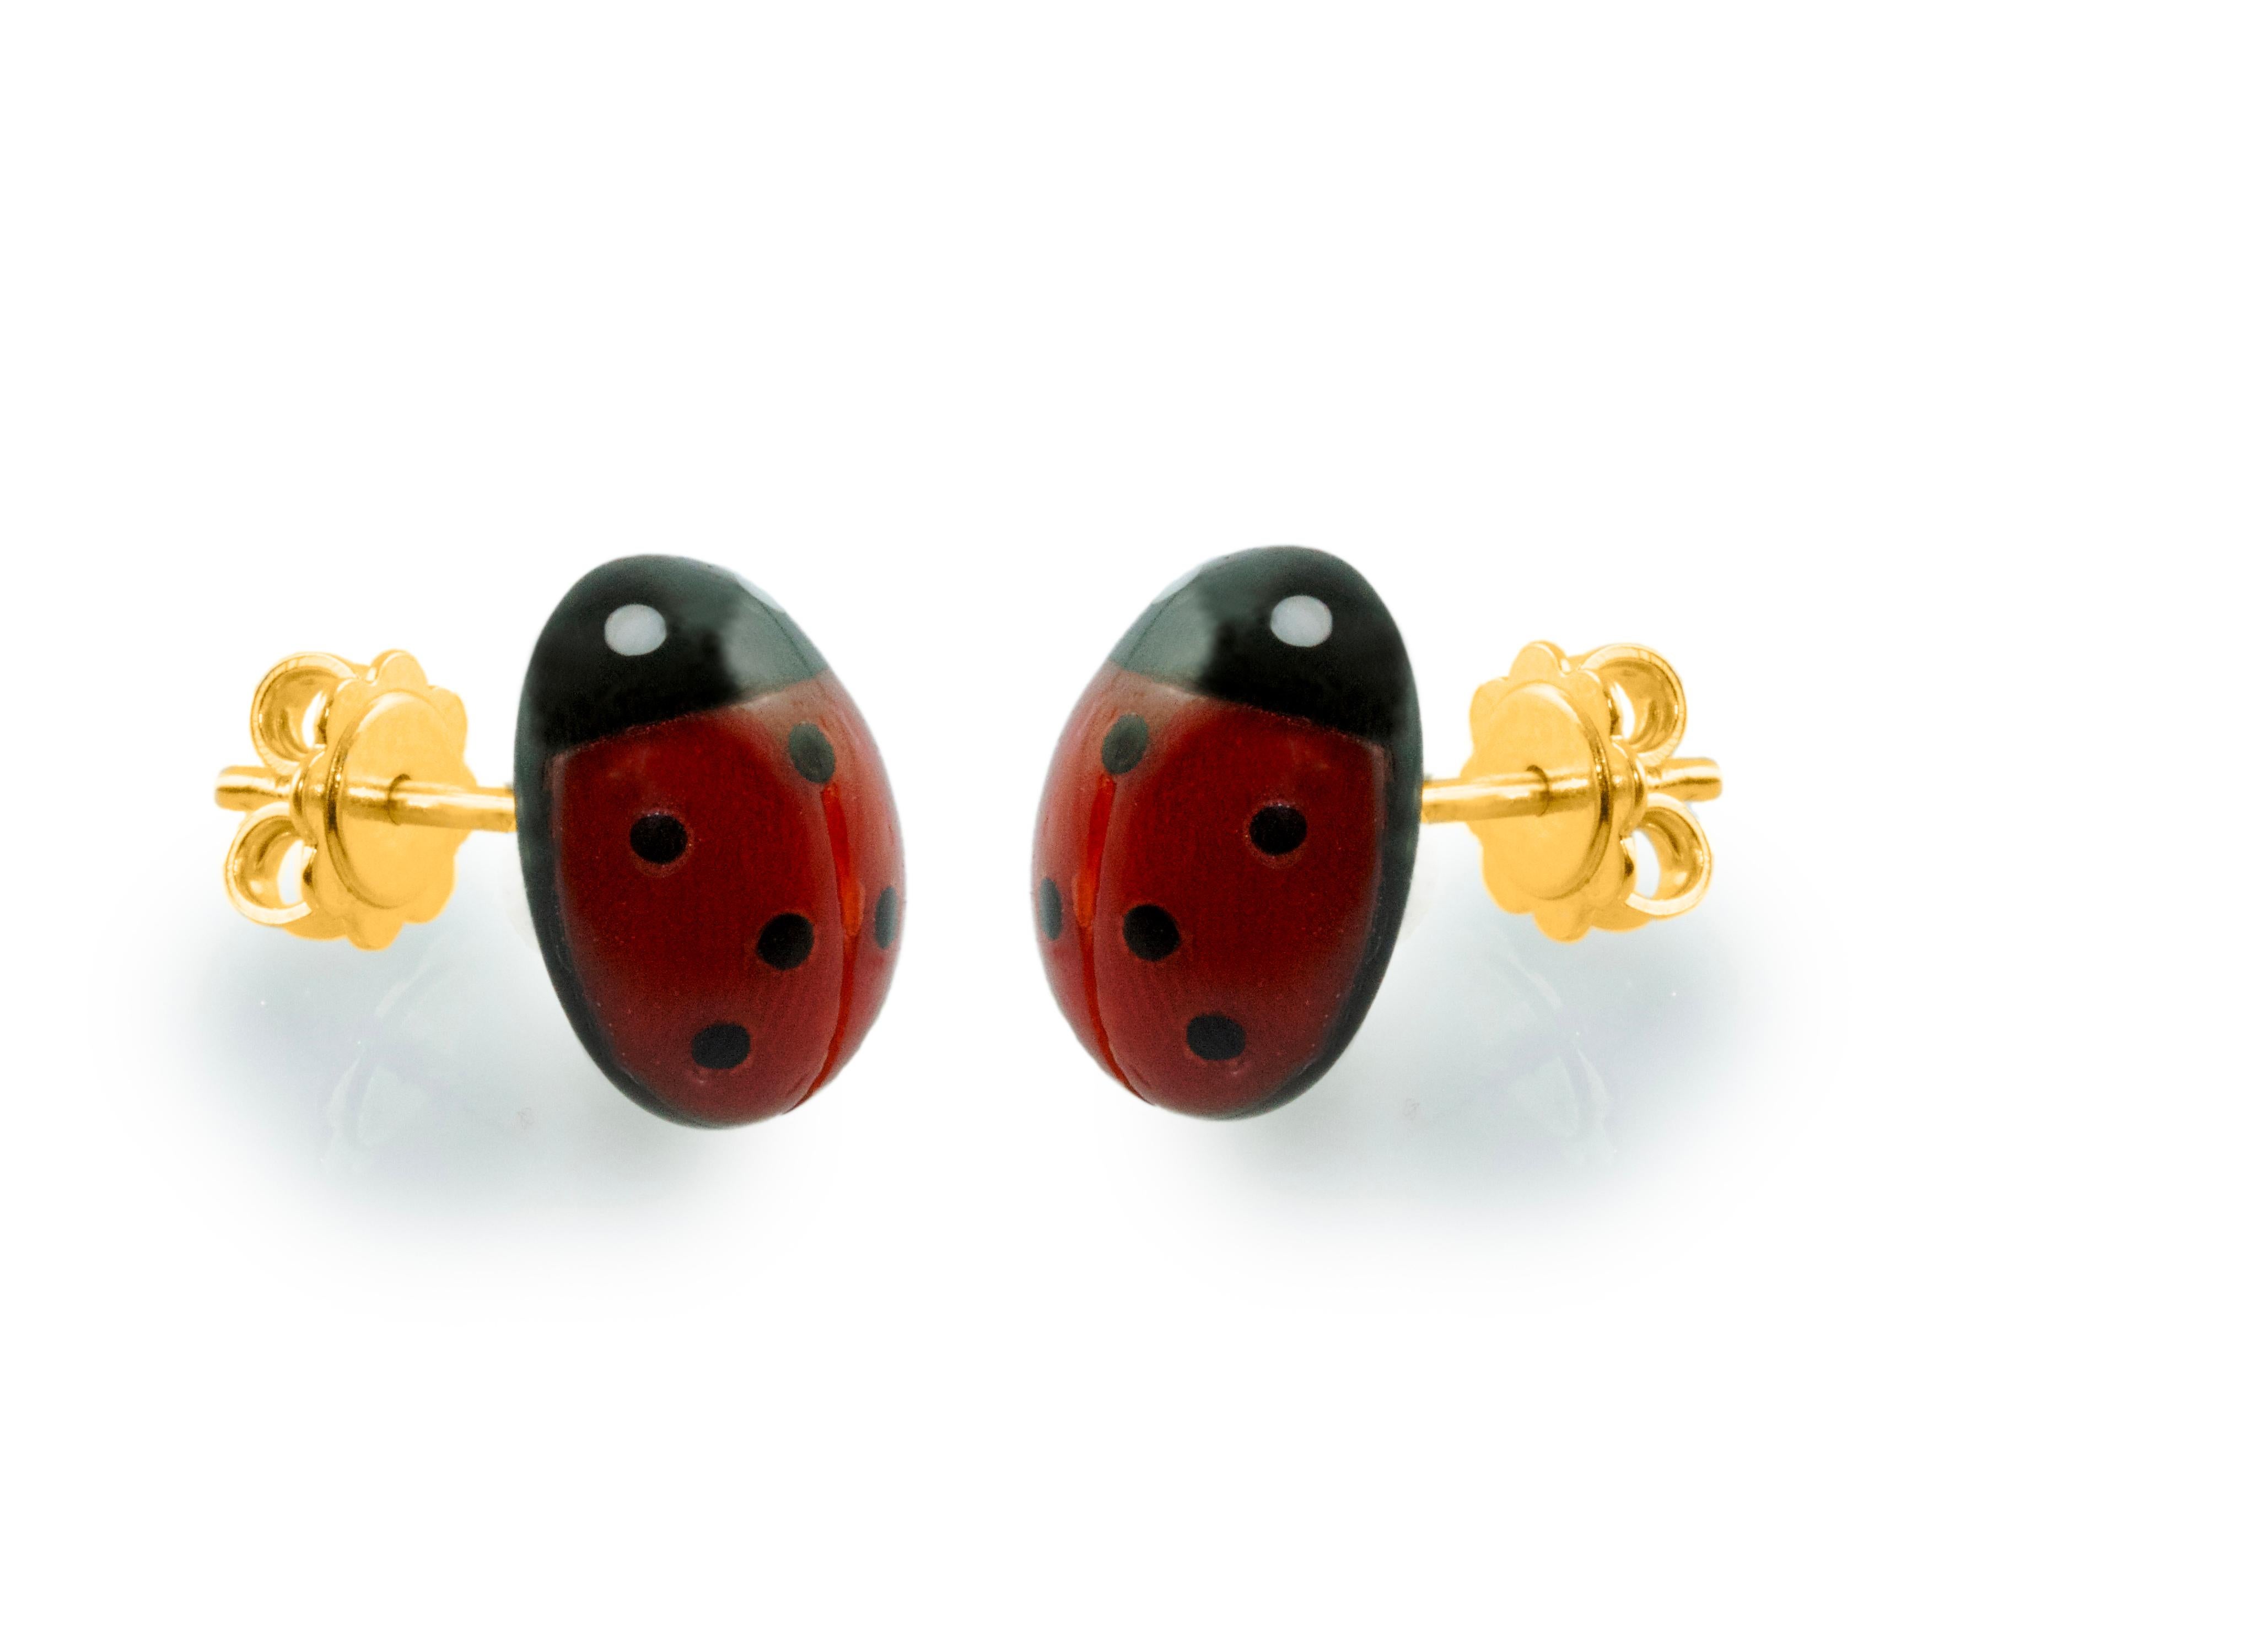 miraculous ladybug earrings gold